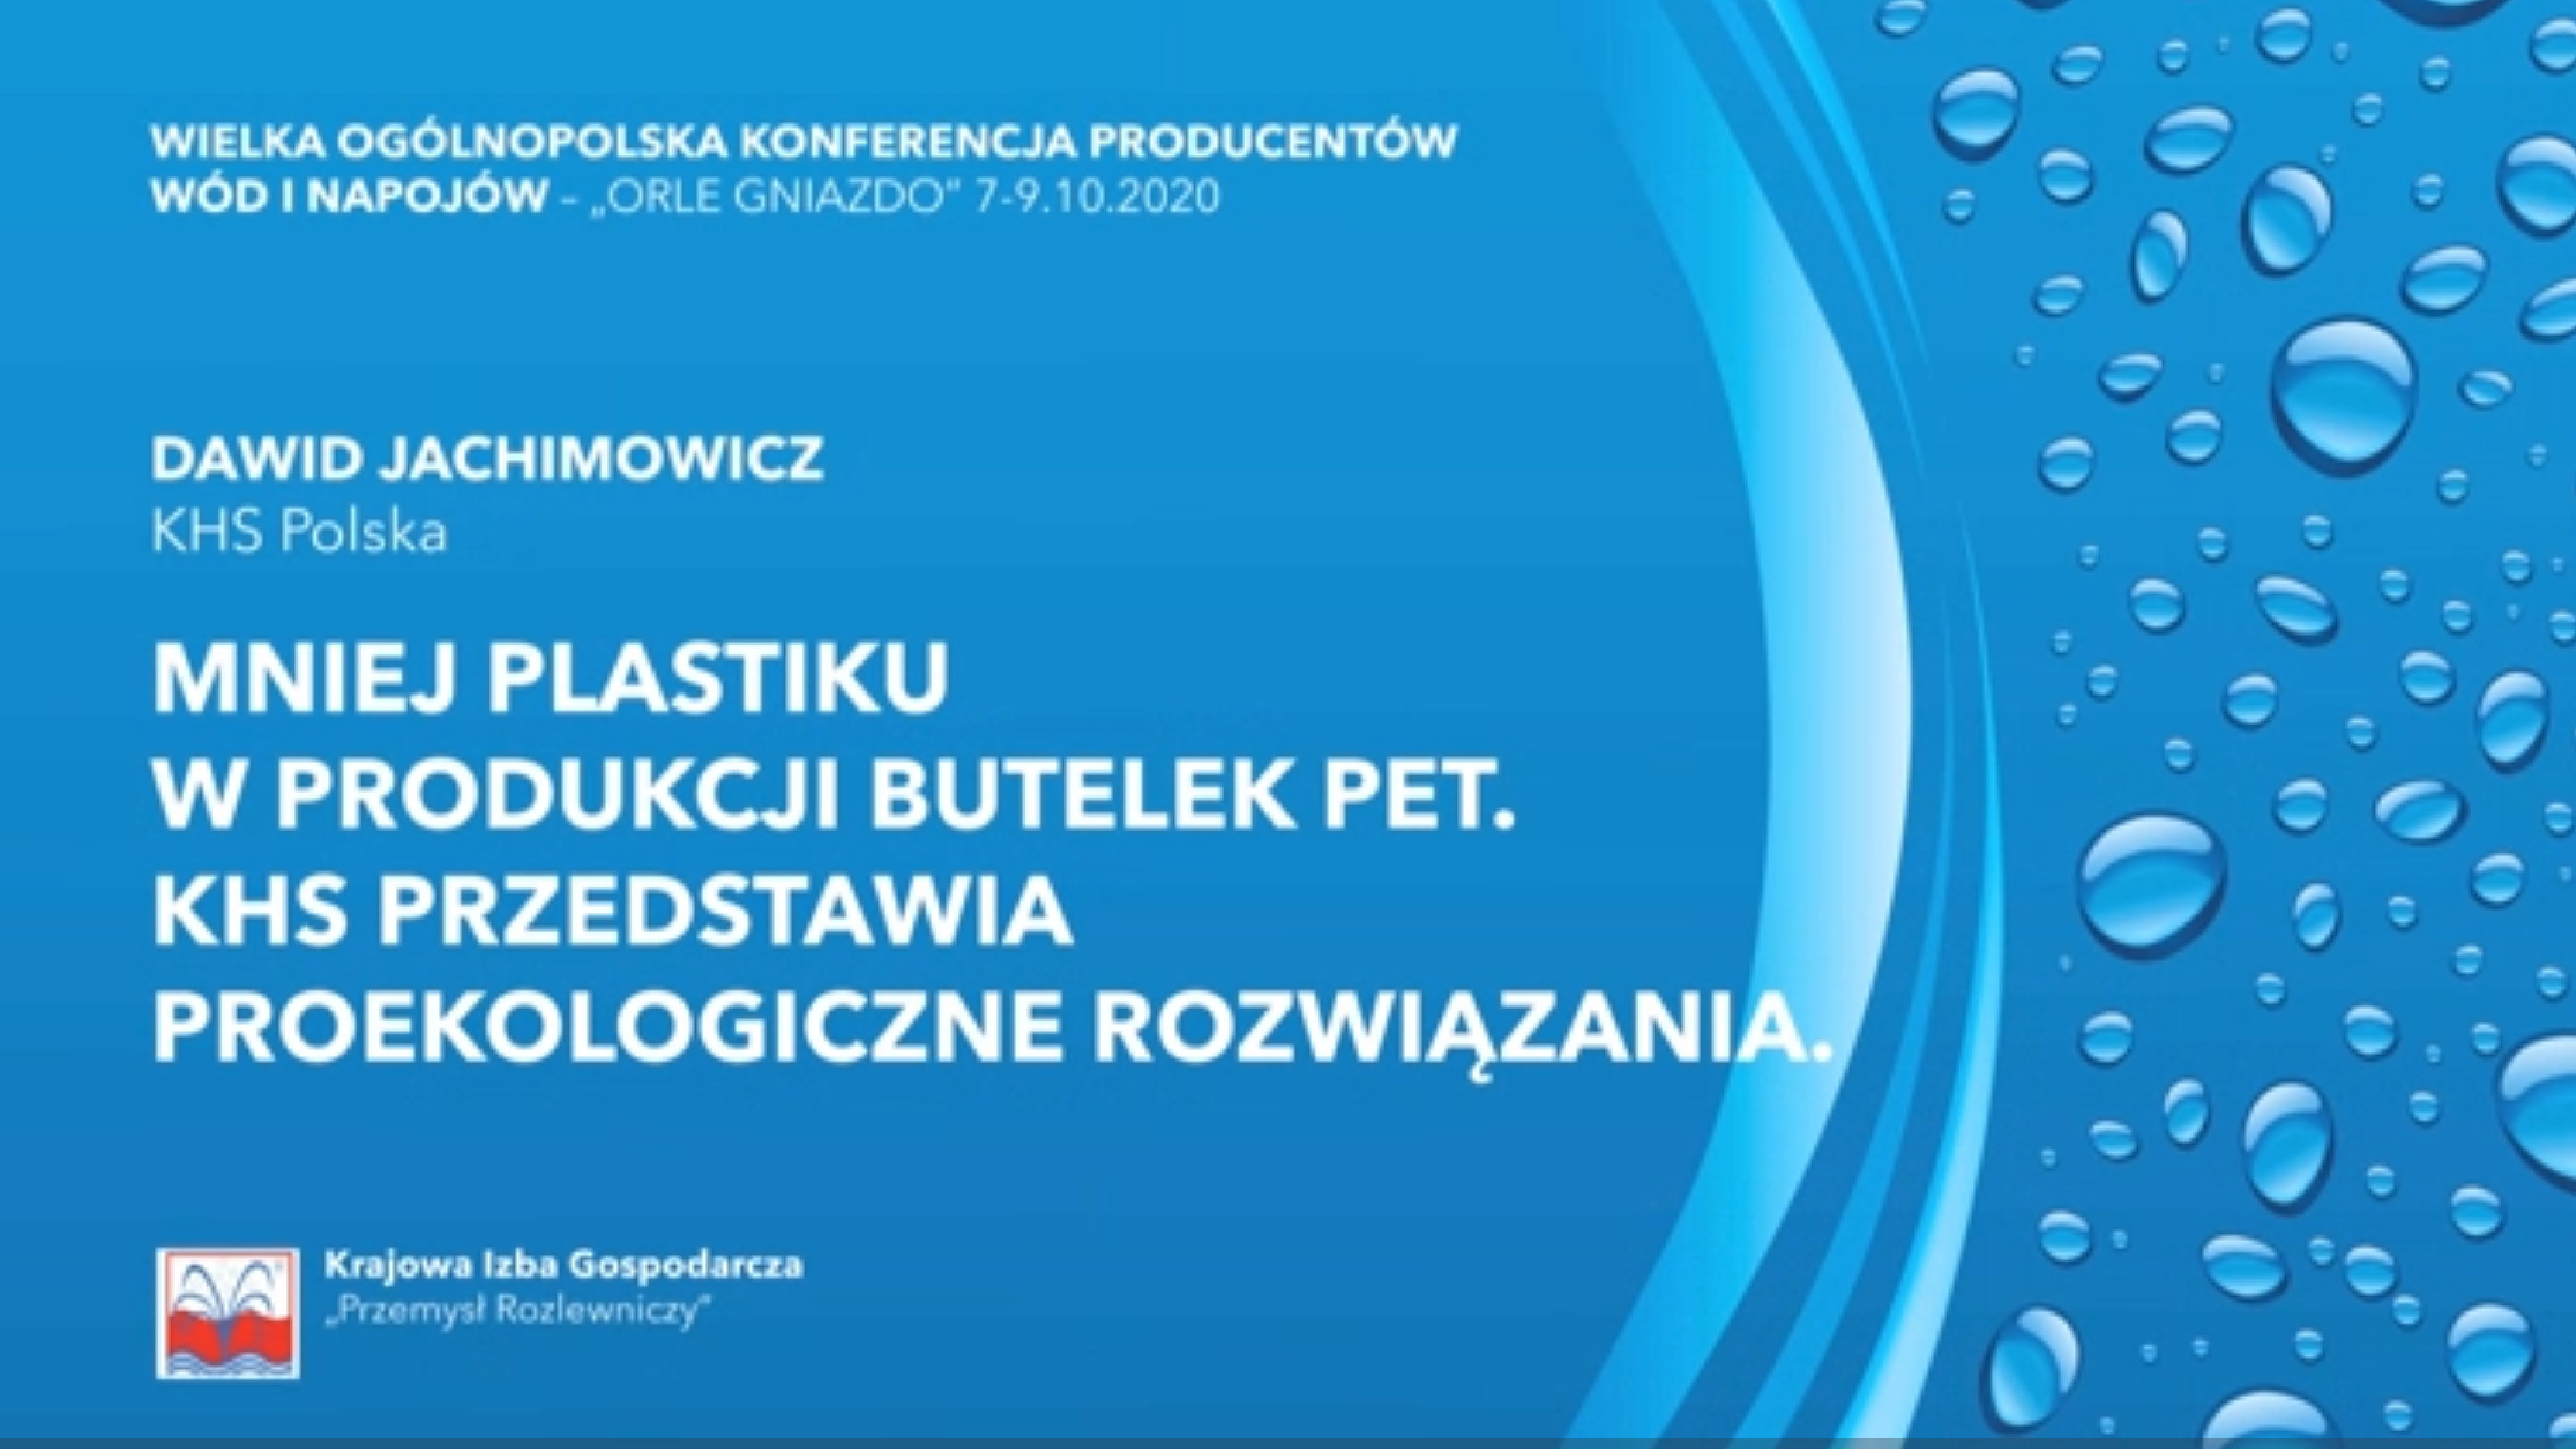 Dawid Jachimowicz: “Mniej plastiku w produkcji butelek PET. KHS przedstawia proekologiczne rozwiązania.”